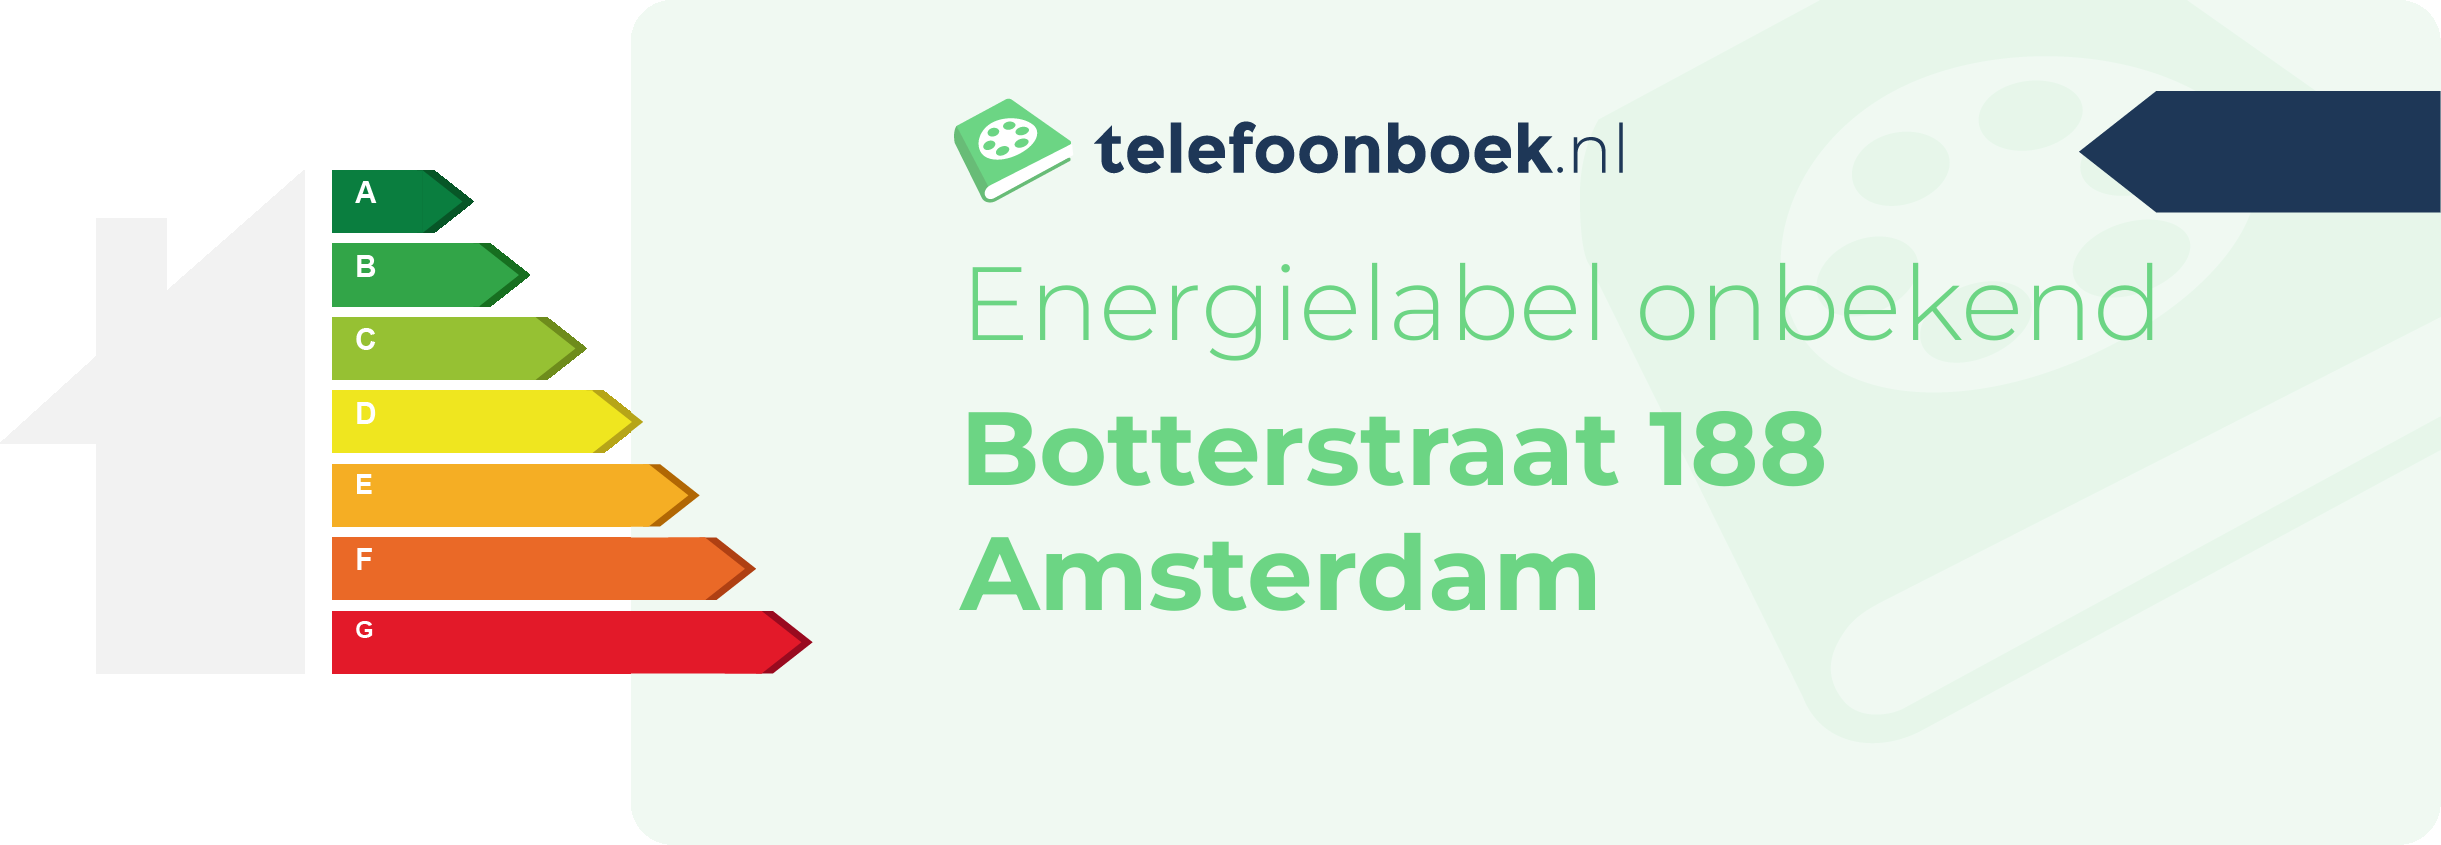 Energielabel Botterstraat 188 Amsterdam